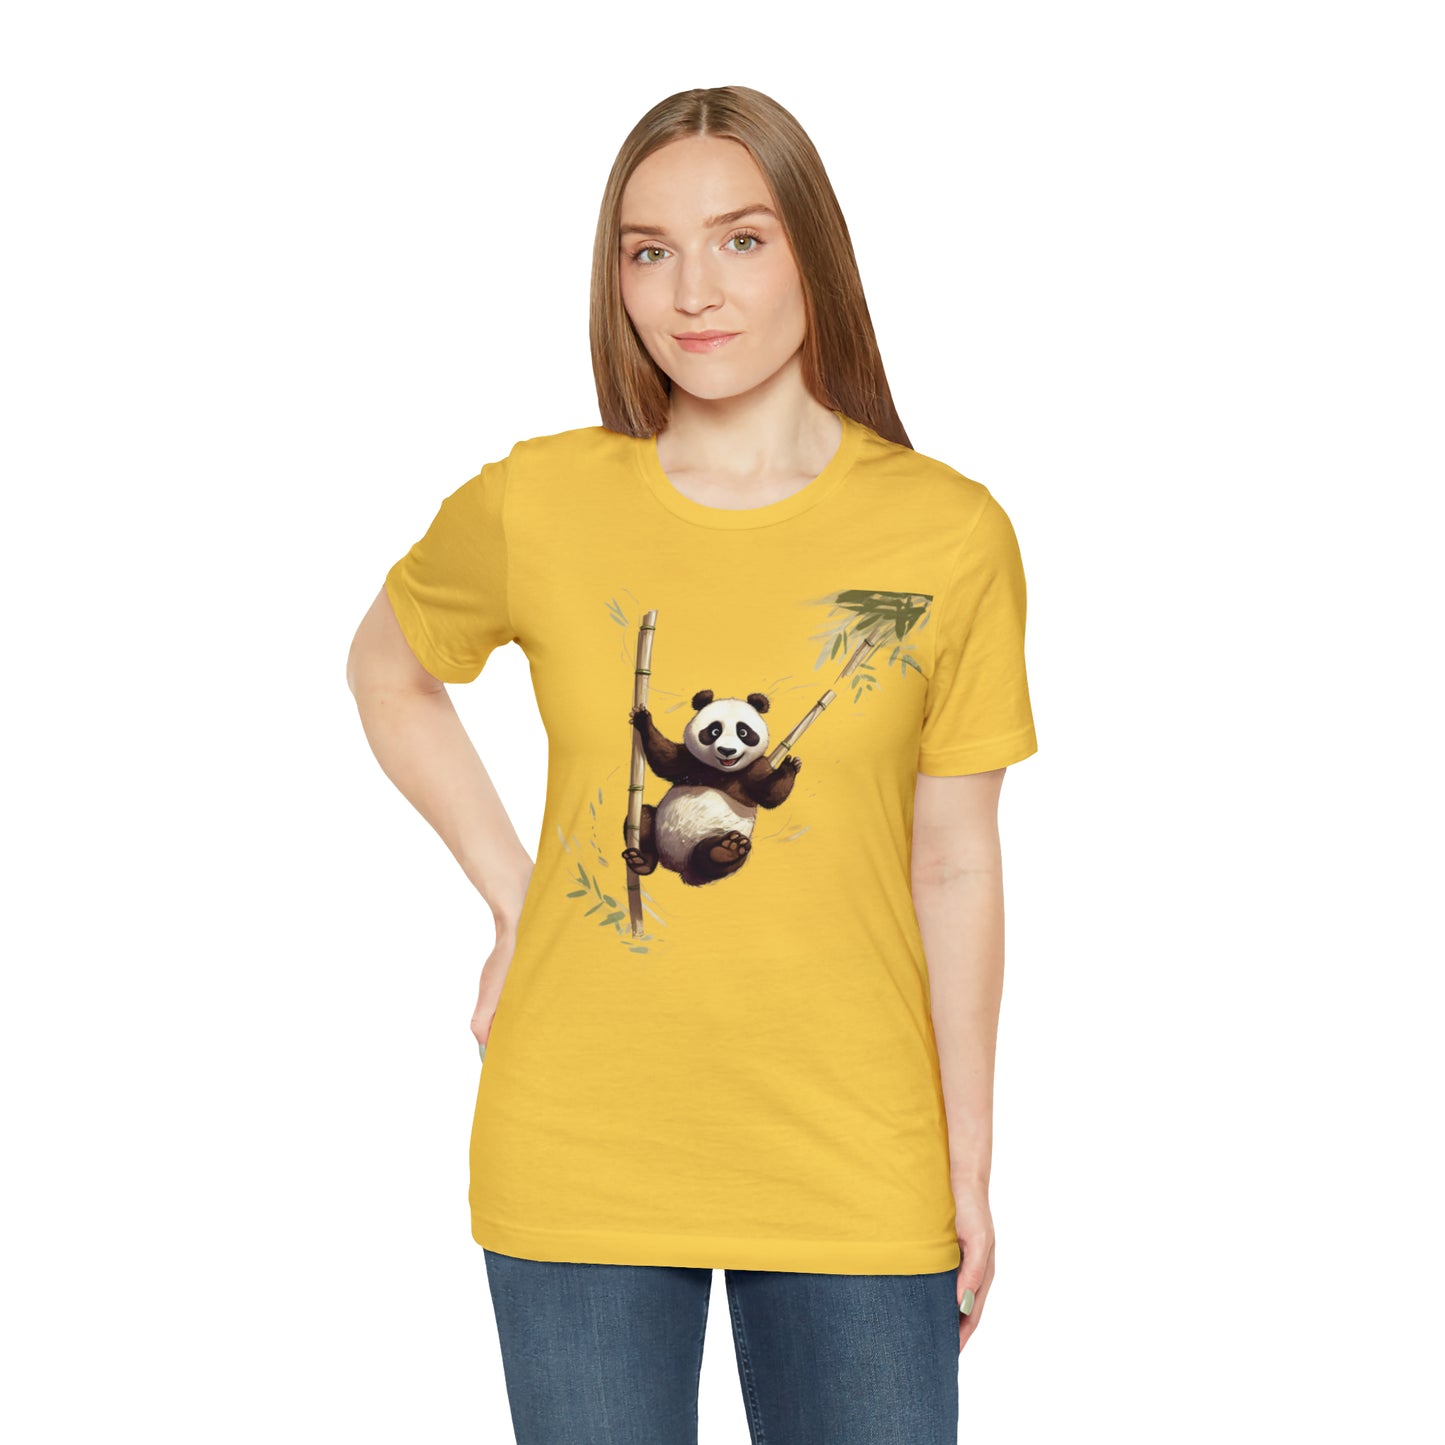 Panda Bungee Jumping Tee